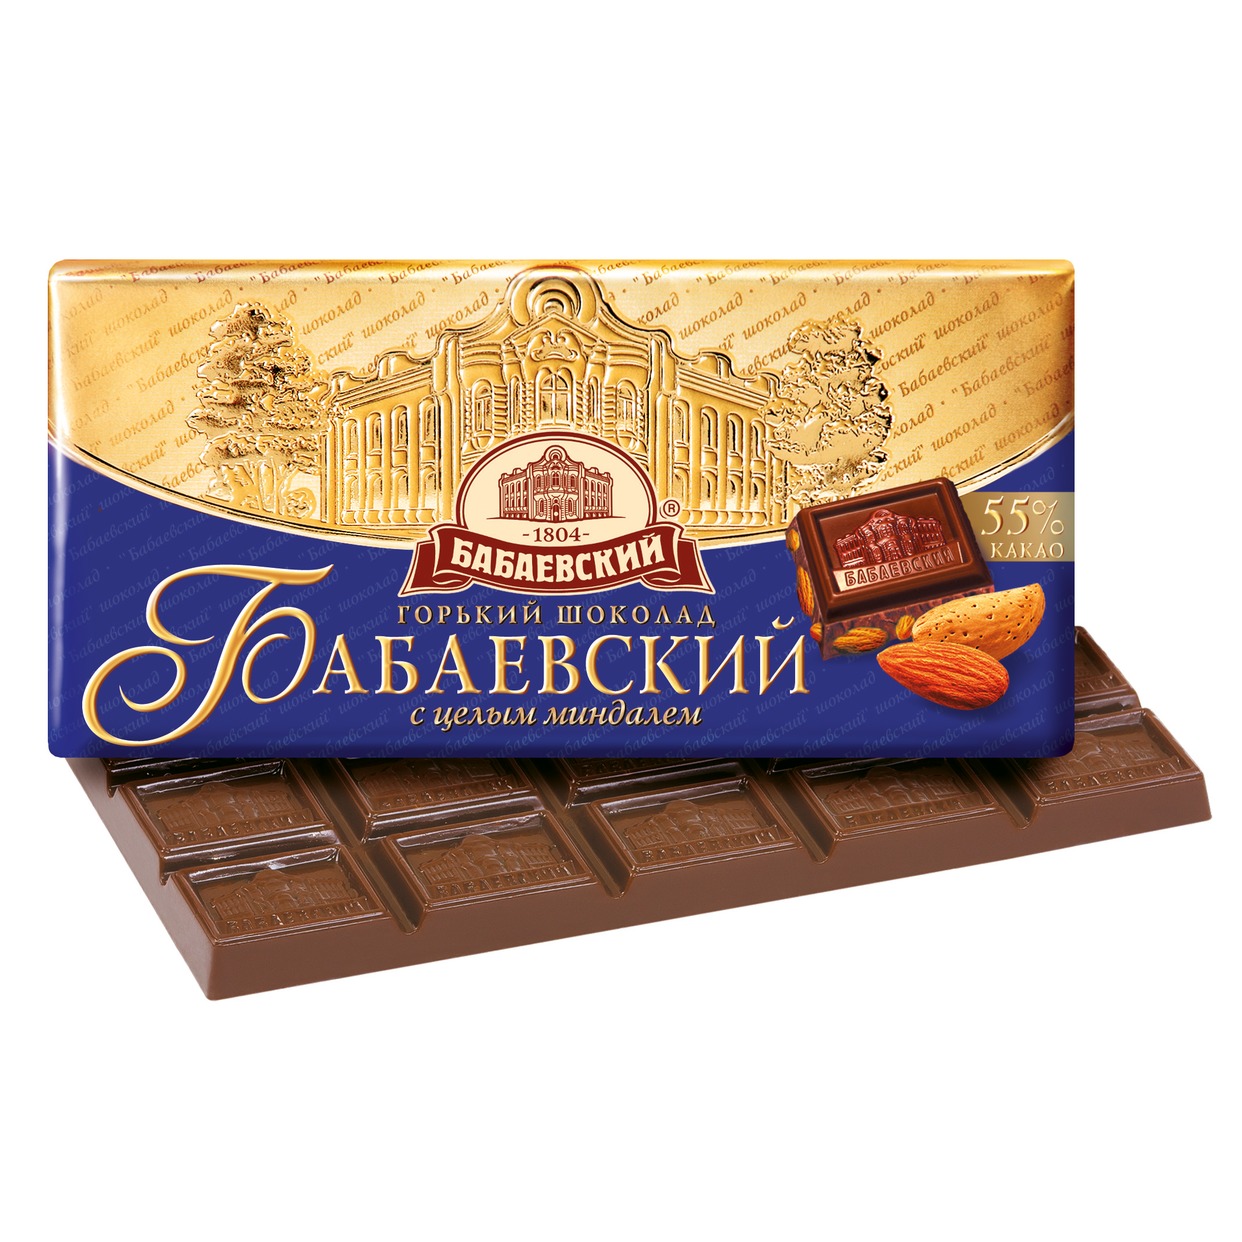 Шоколад "Бабаевский" Темный с целым миндалем 100г по акции в Пятерочке